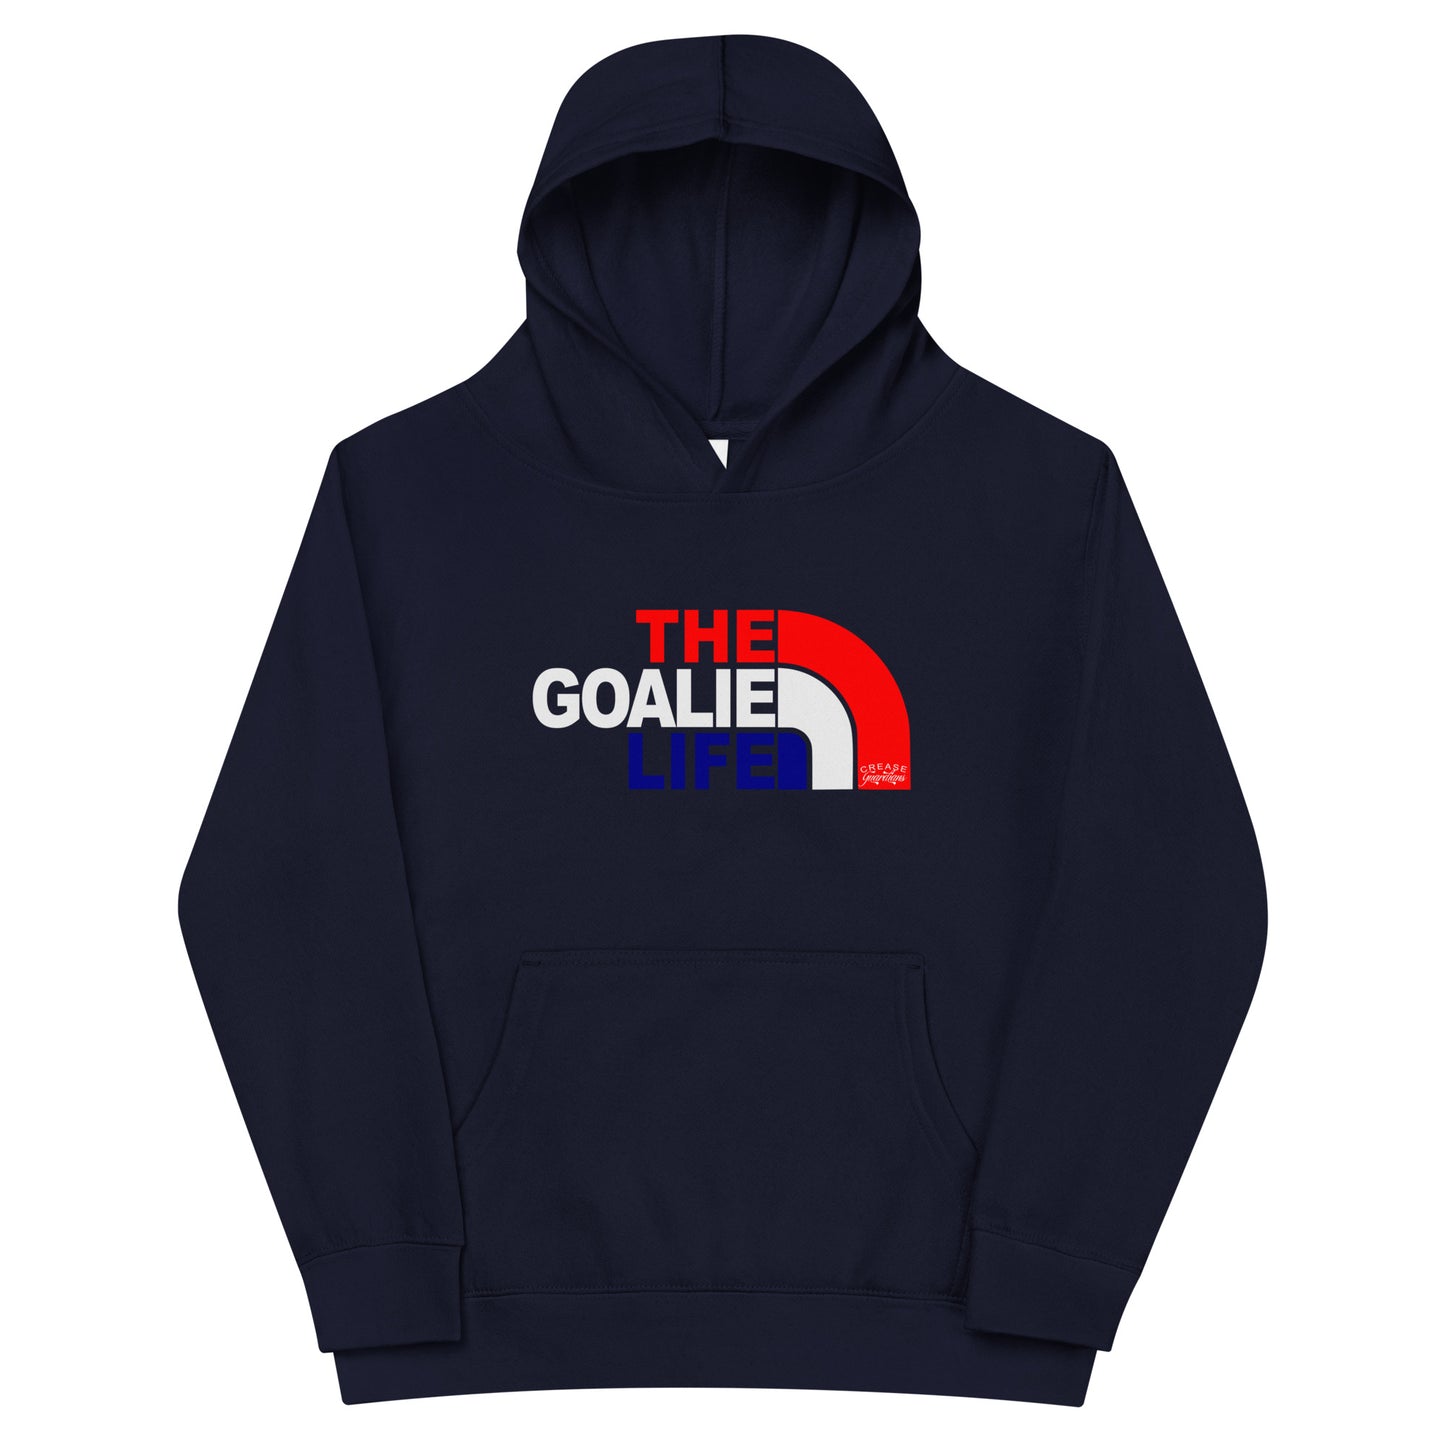 The Goalie Life Youth fleece hoodie